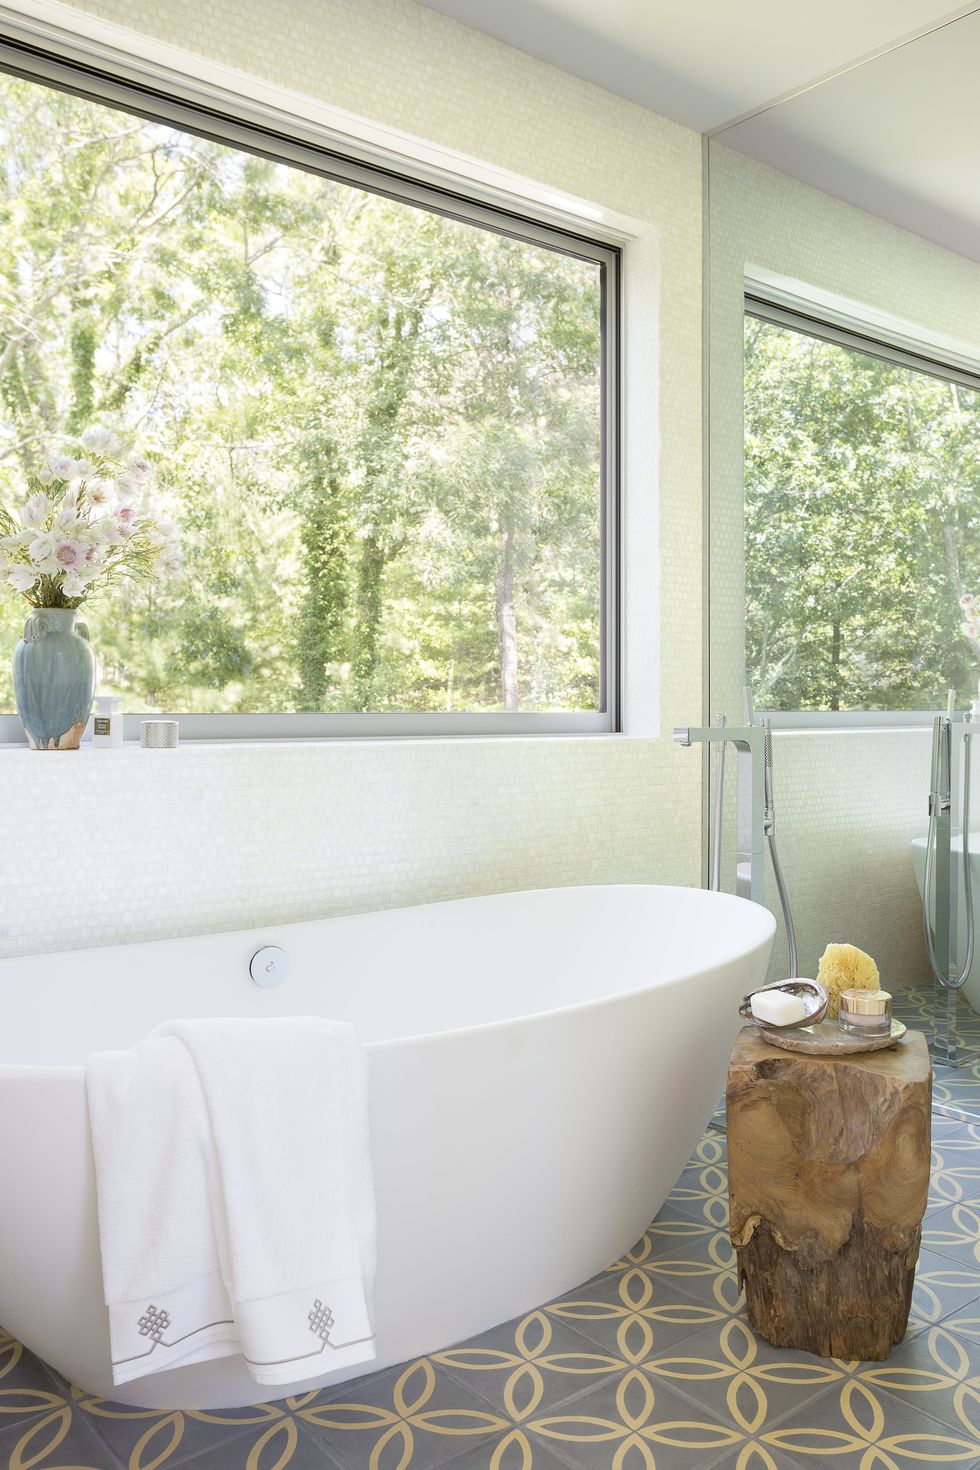 NTK nội thất đã khéo léo sử dụng cửa kính kết hợp gương soi để nhân rộng không gian và ánh sáng trong phòng tắm tuyệt đẹp này. Màu xanh của cây cối kết hợp với chiếc bàn gỗ, gạch bông lát sàn cổ điển trông rất mộc mạc.